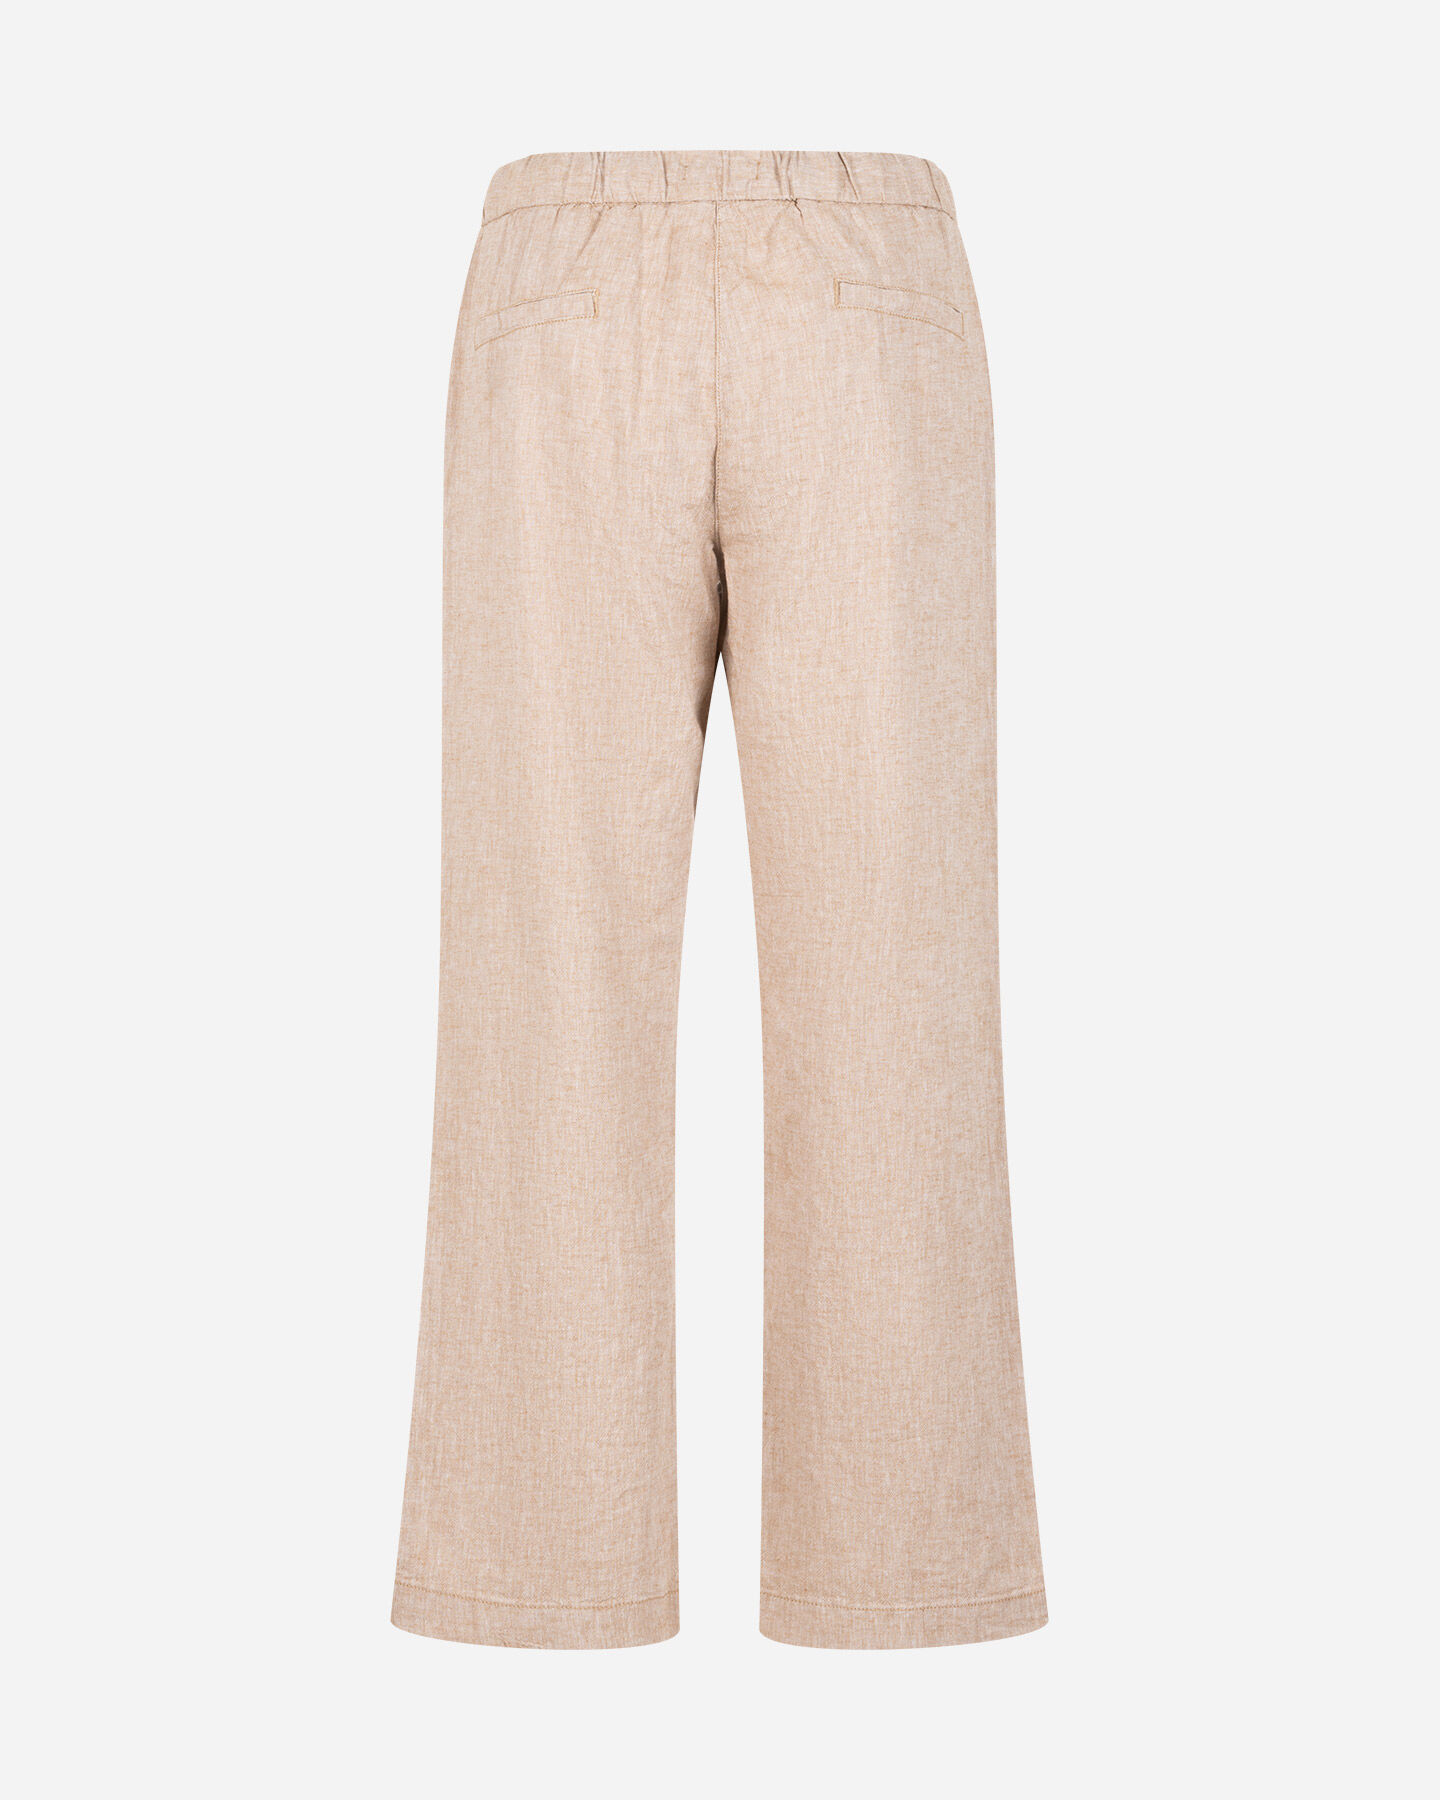  Pantalone DACK'S URBAN W S4129749|077|XS scatto 1